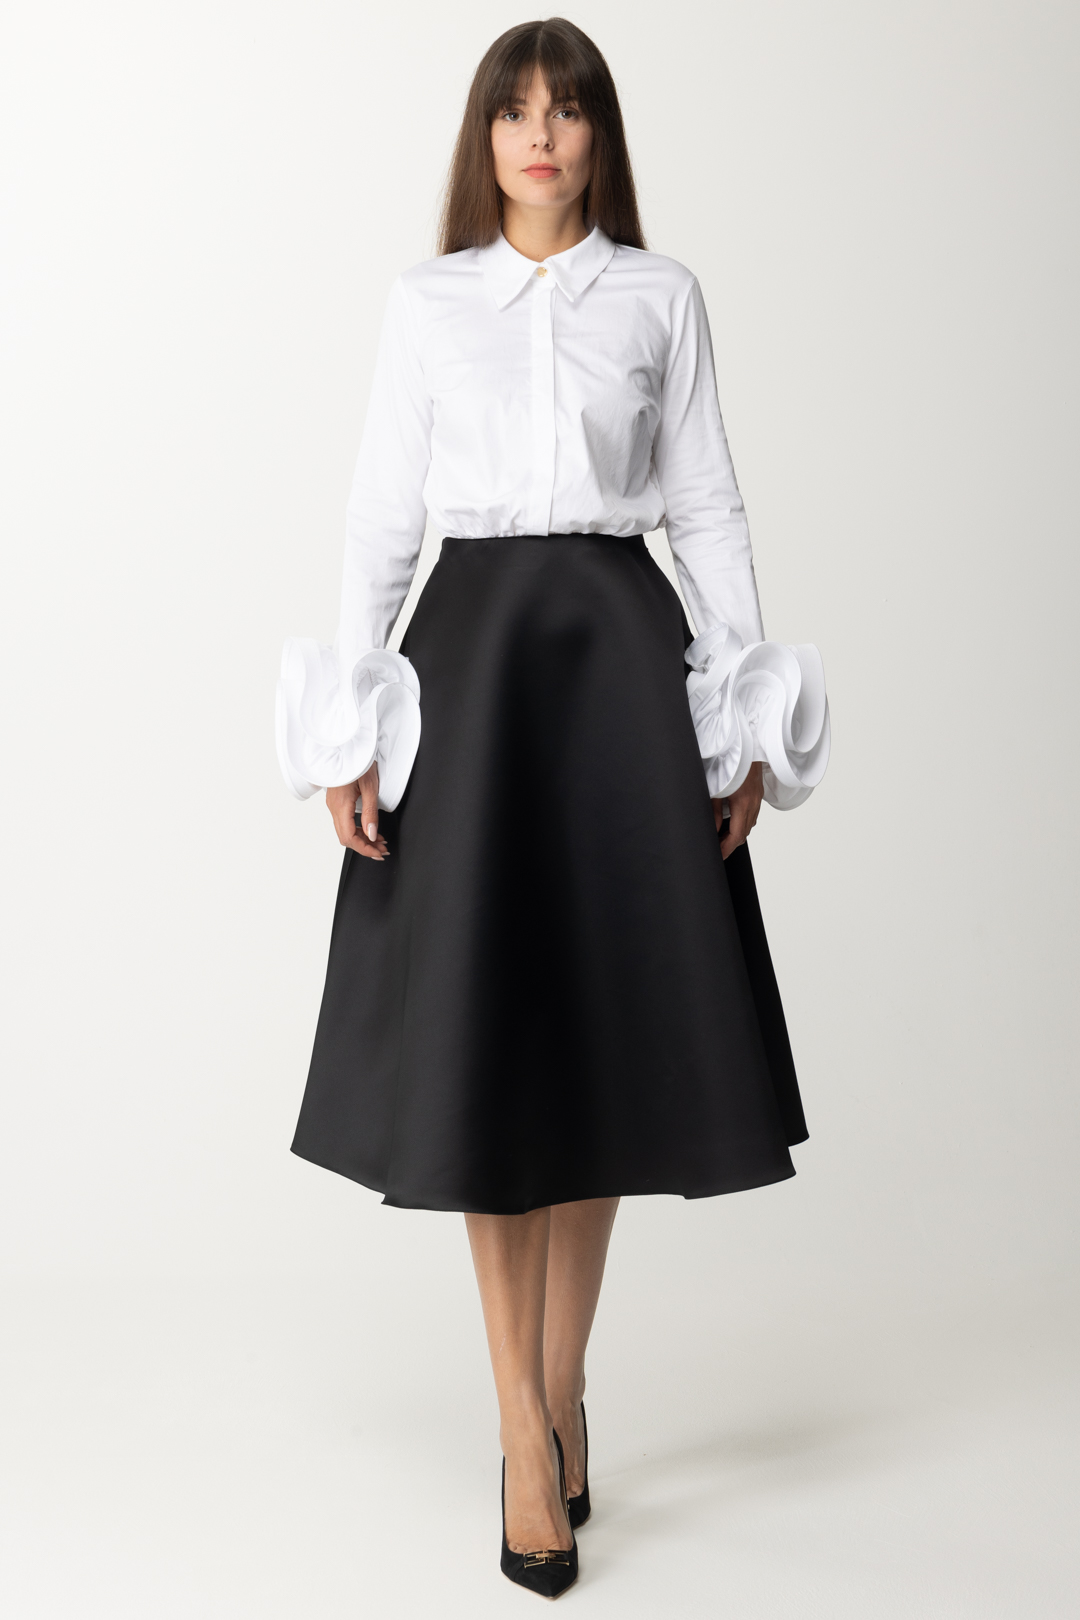 Vista previa: Elisabetta Franchi Vestido con camisa y falda ancha. Bianco/Nero